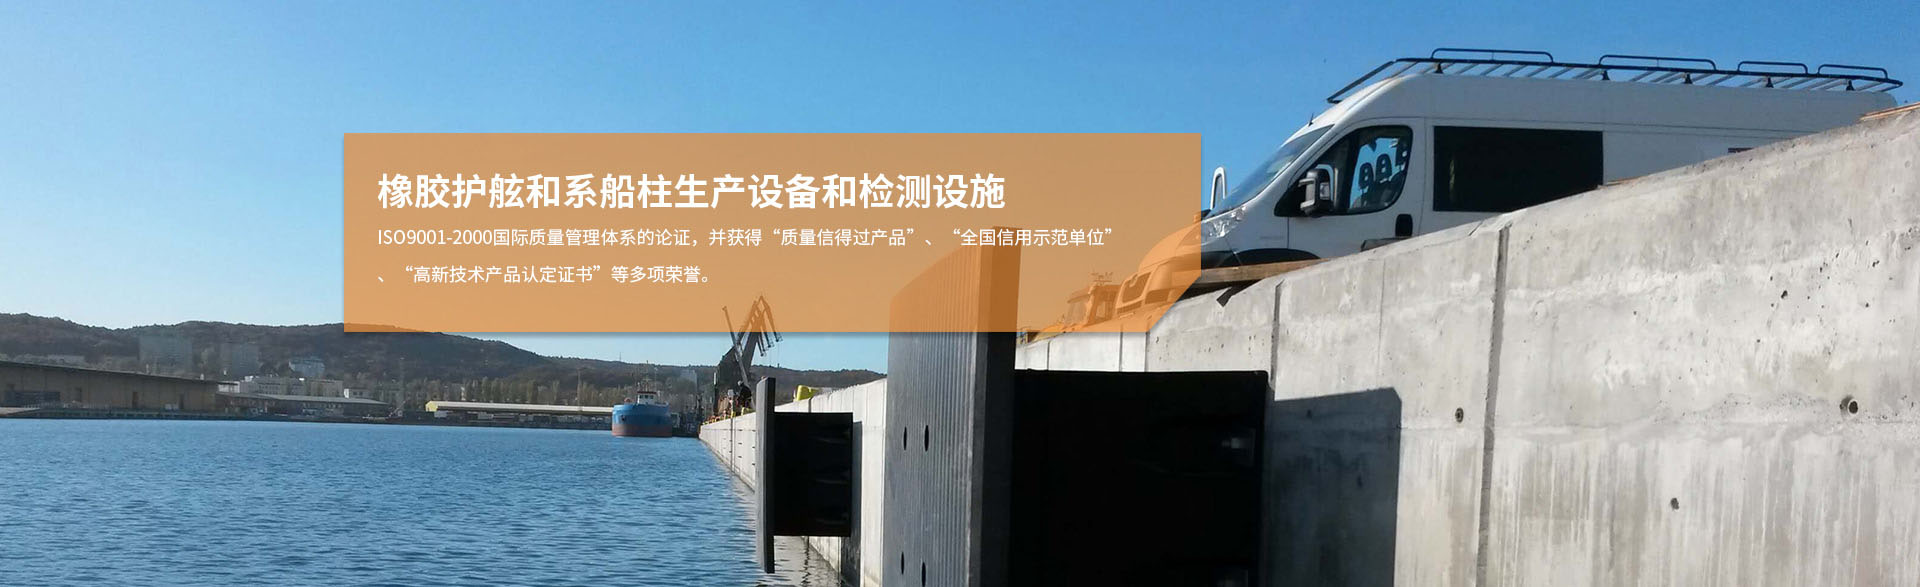 橡胶护舷厂家--扬州市港盾工程橡胶